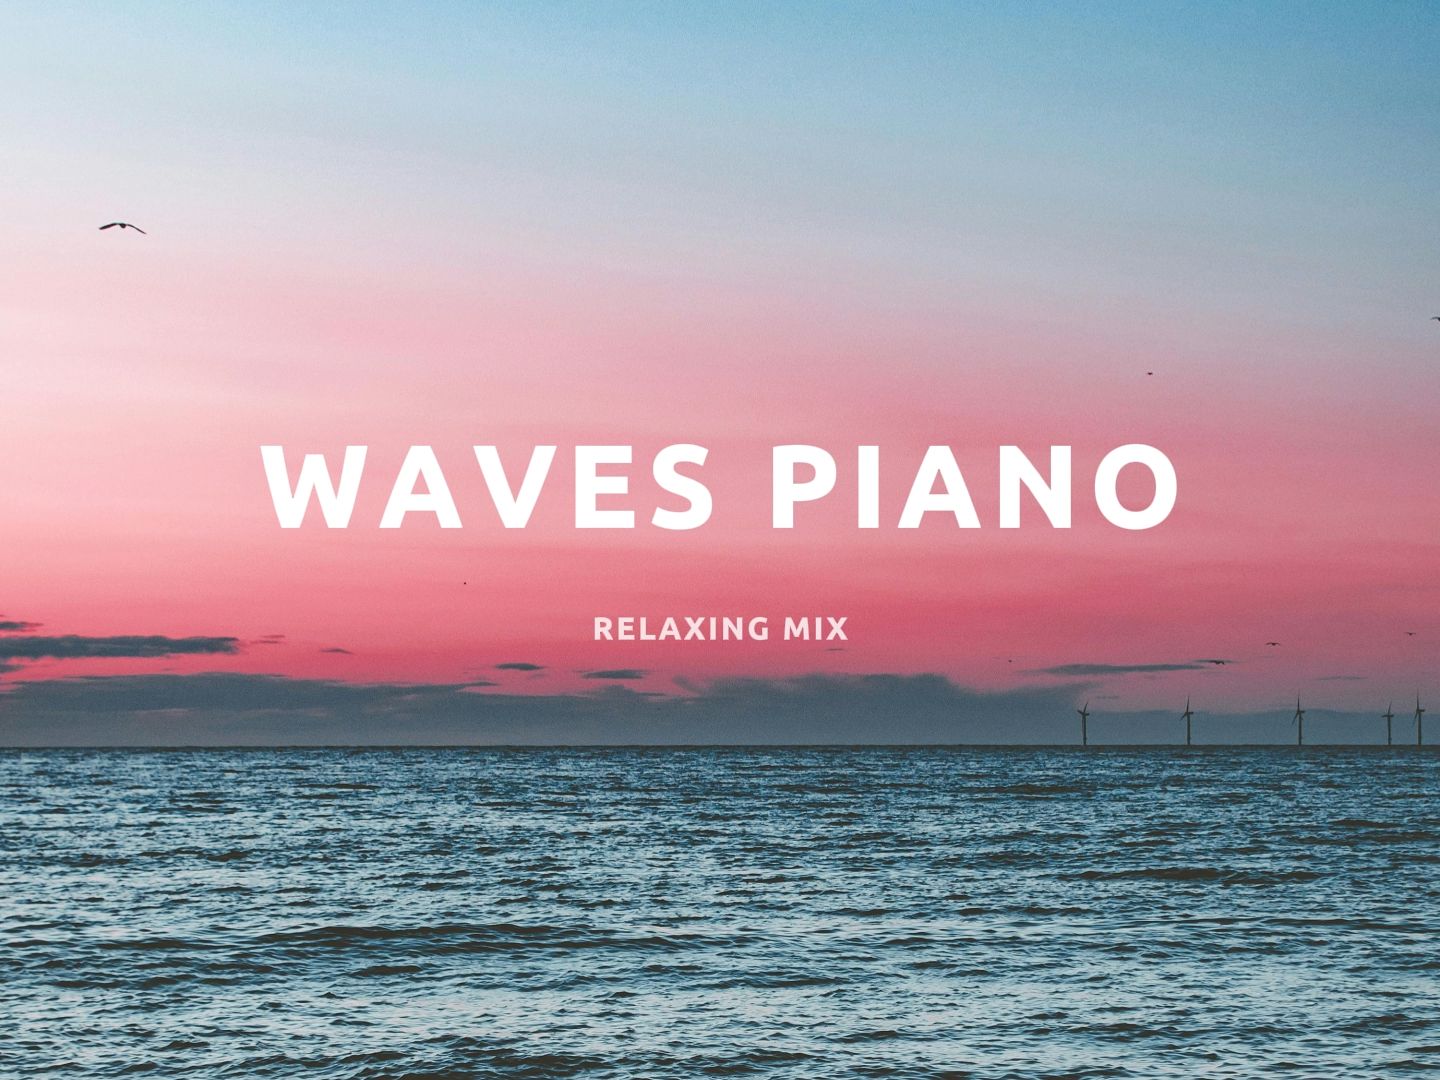 「舒缓钢琴曲」歌单 | 海浪声加上纯音乐绝对是最放松的搭配 | 适合一个人慢慢听 | 值得无限循环